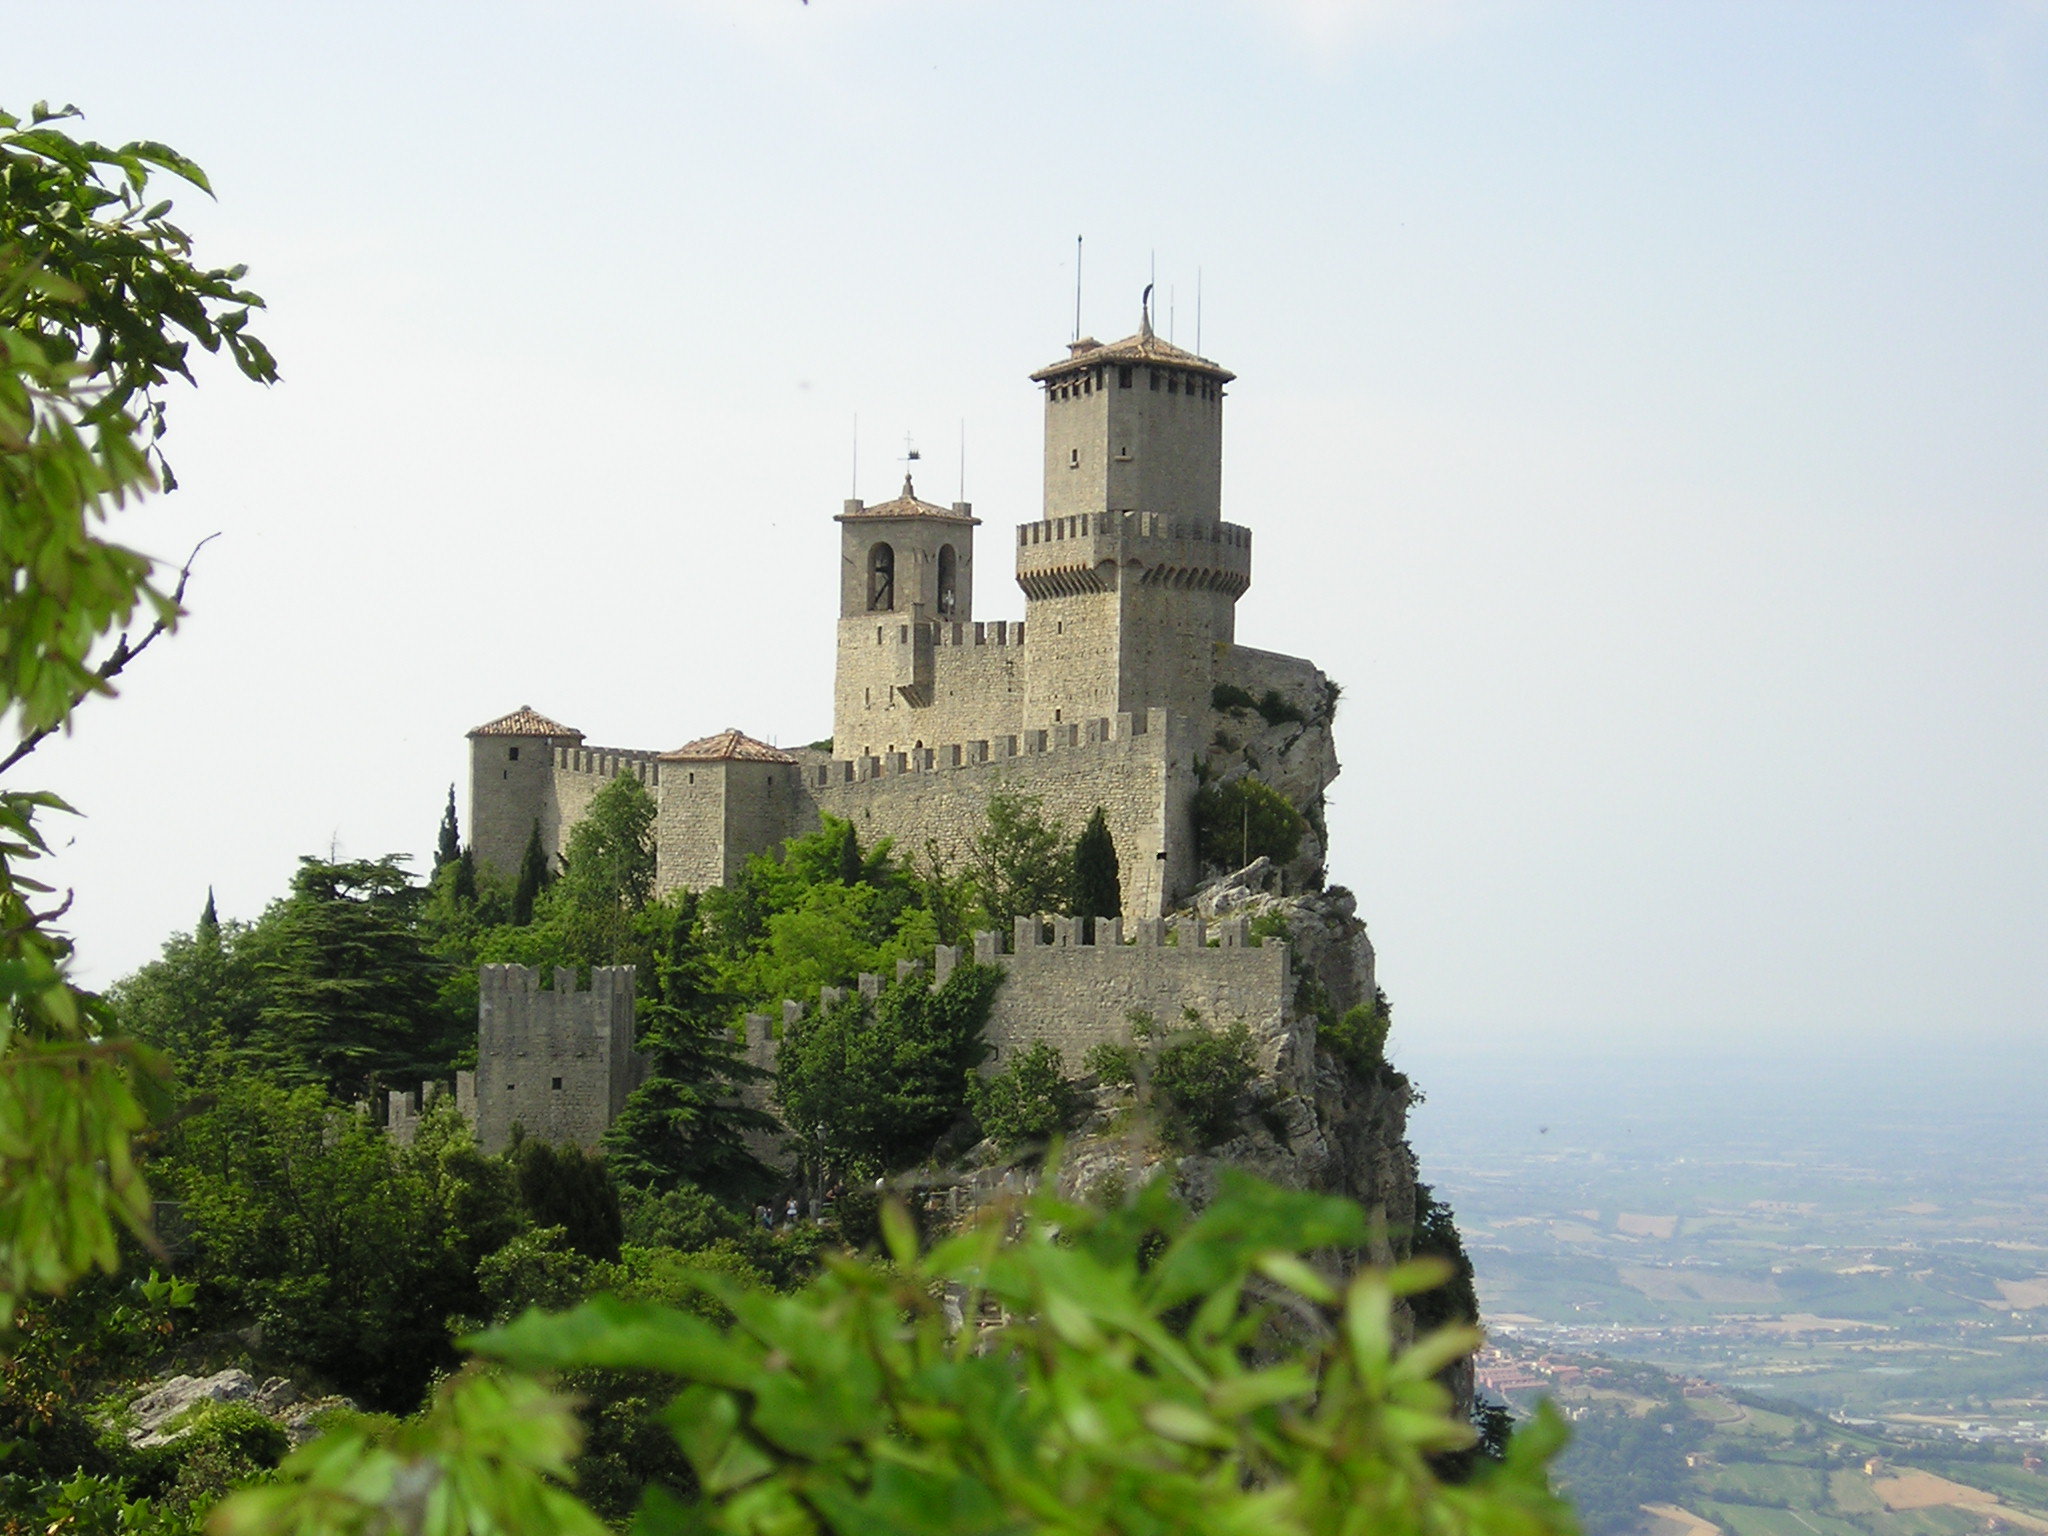 Old Italy Castle by punK-rockeR101 on DeviantArt